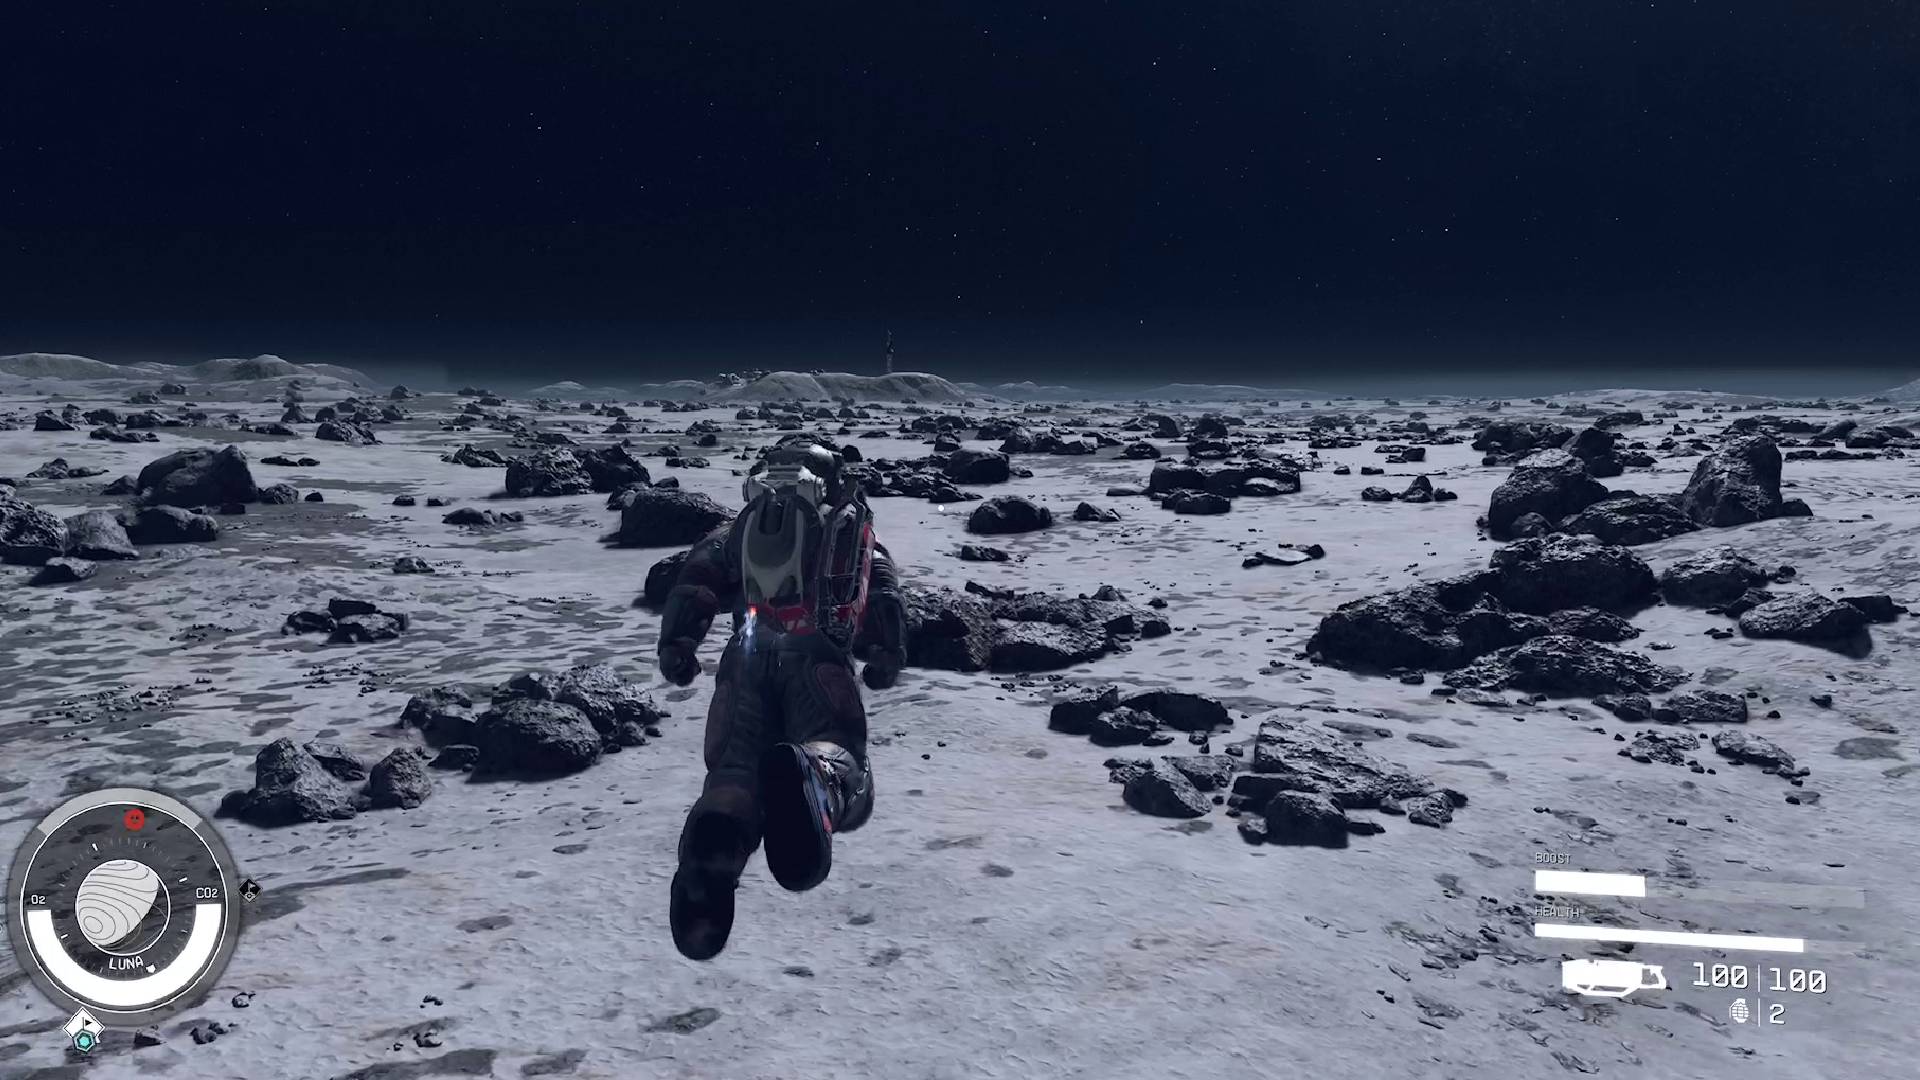 Hráč Starfield boostpacků používá boostpack k letu přes Měsíc